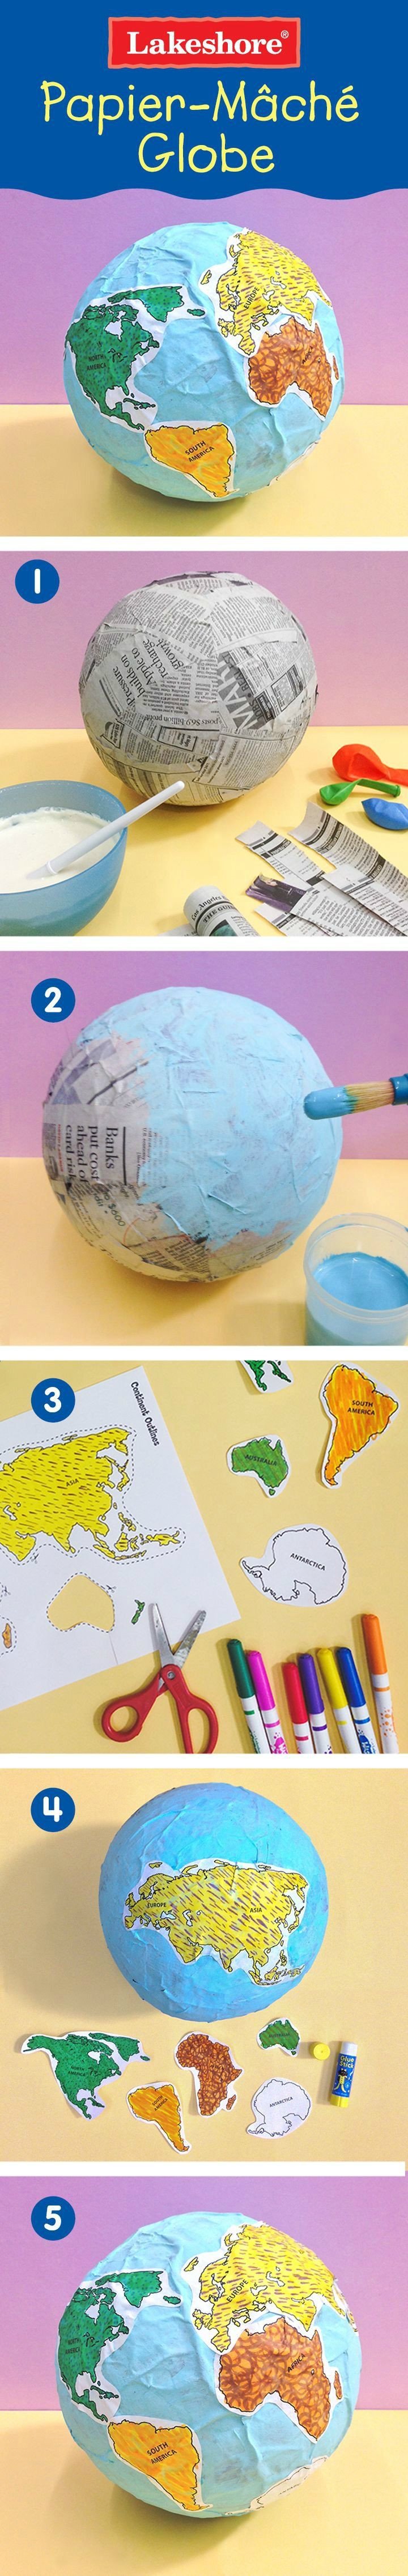 Continent Templates for Globe Papier Mâché Globe with Free Printable Continent Template